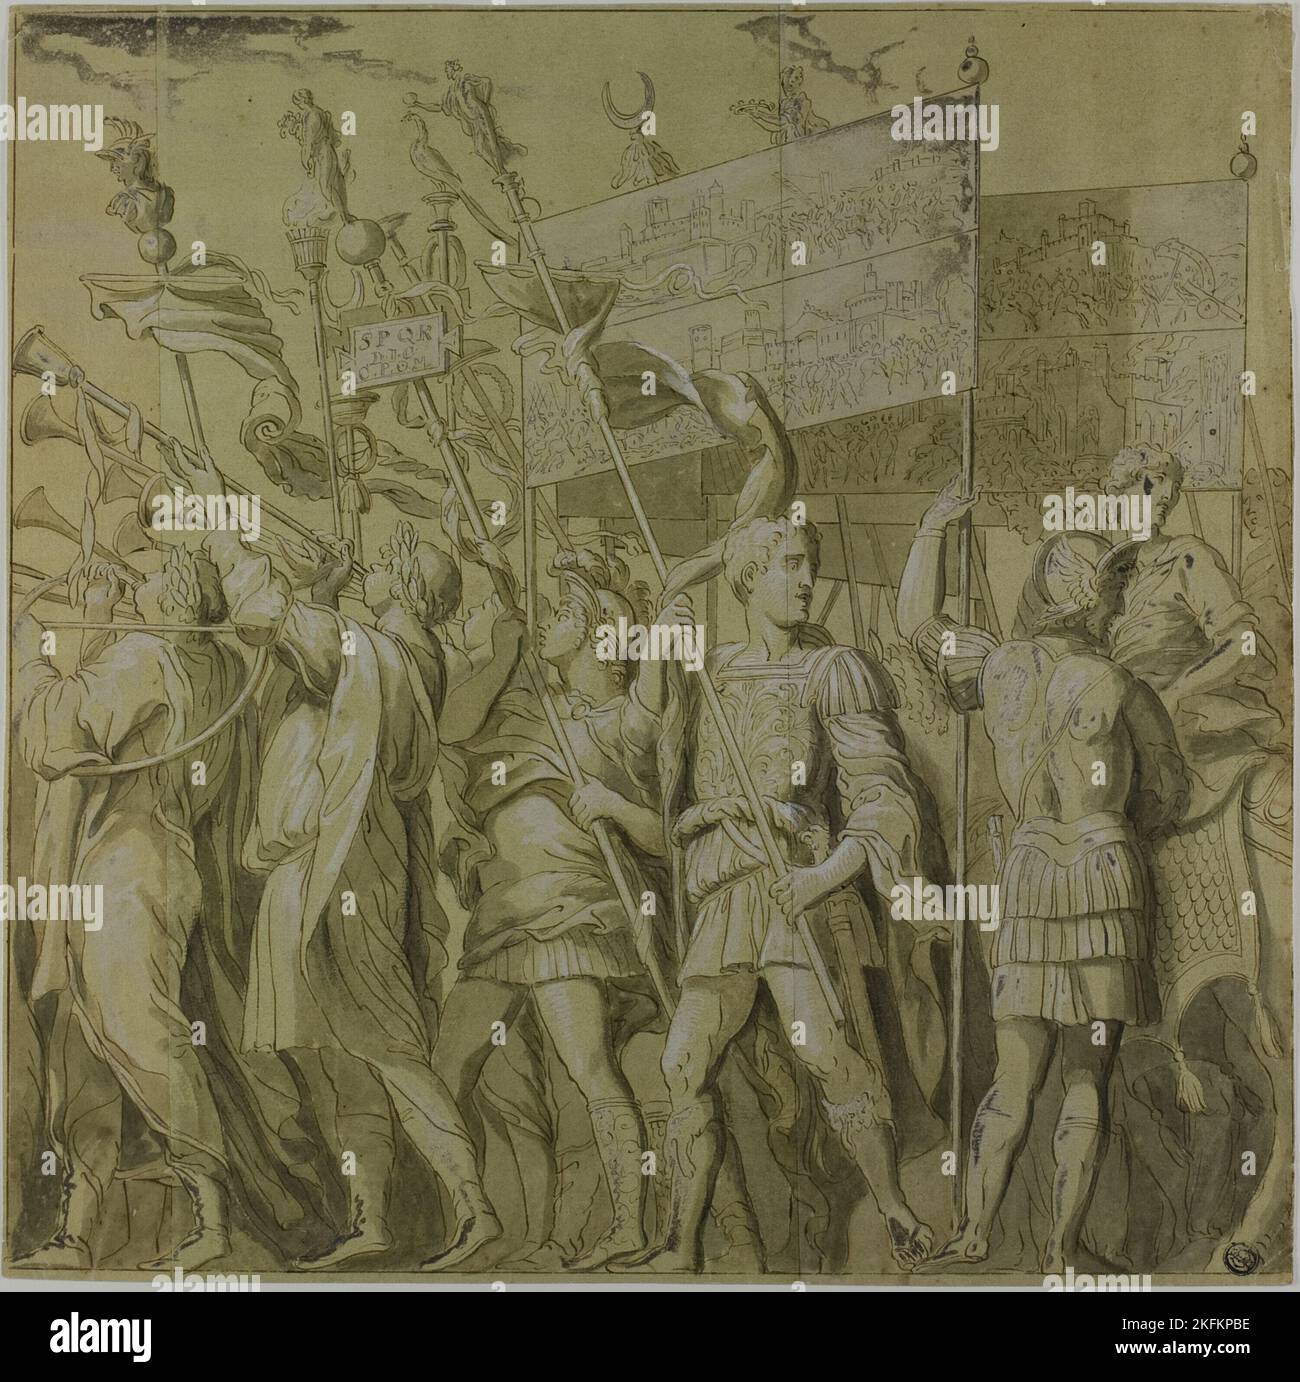 Triunfos DE JULIO CAESAR: Lienzo N º I, n.d. Desfile militar triunfal que celebra la victoria de Julio César en las Guerras Galias. Foto de stock